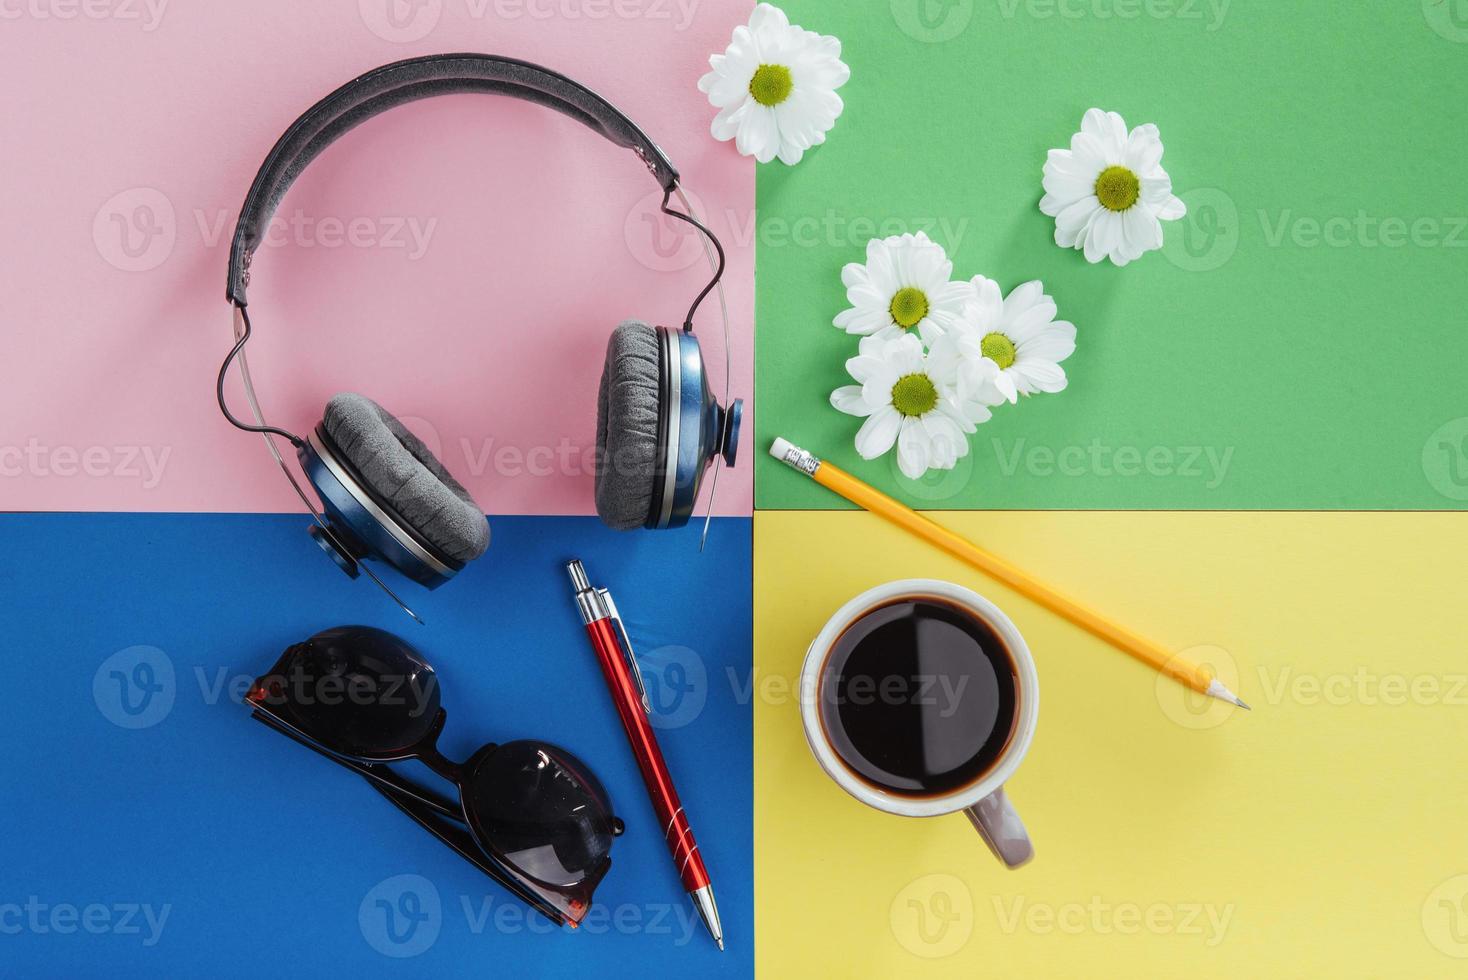 caderno, lápis, óculos, café e flores brancas perfumadas. foto